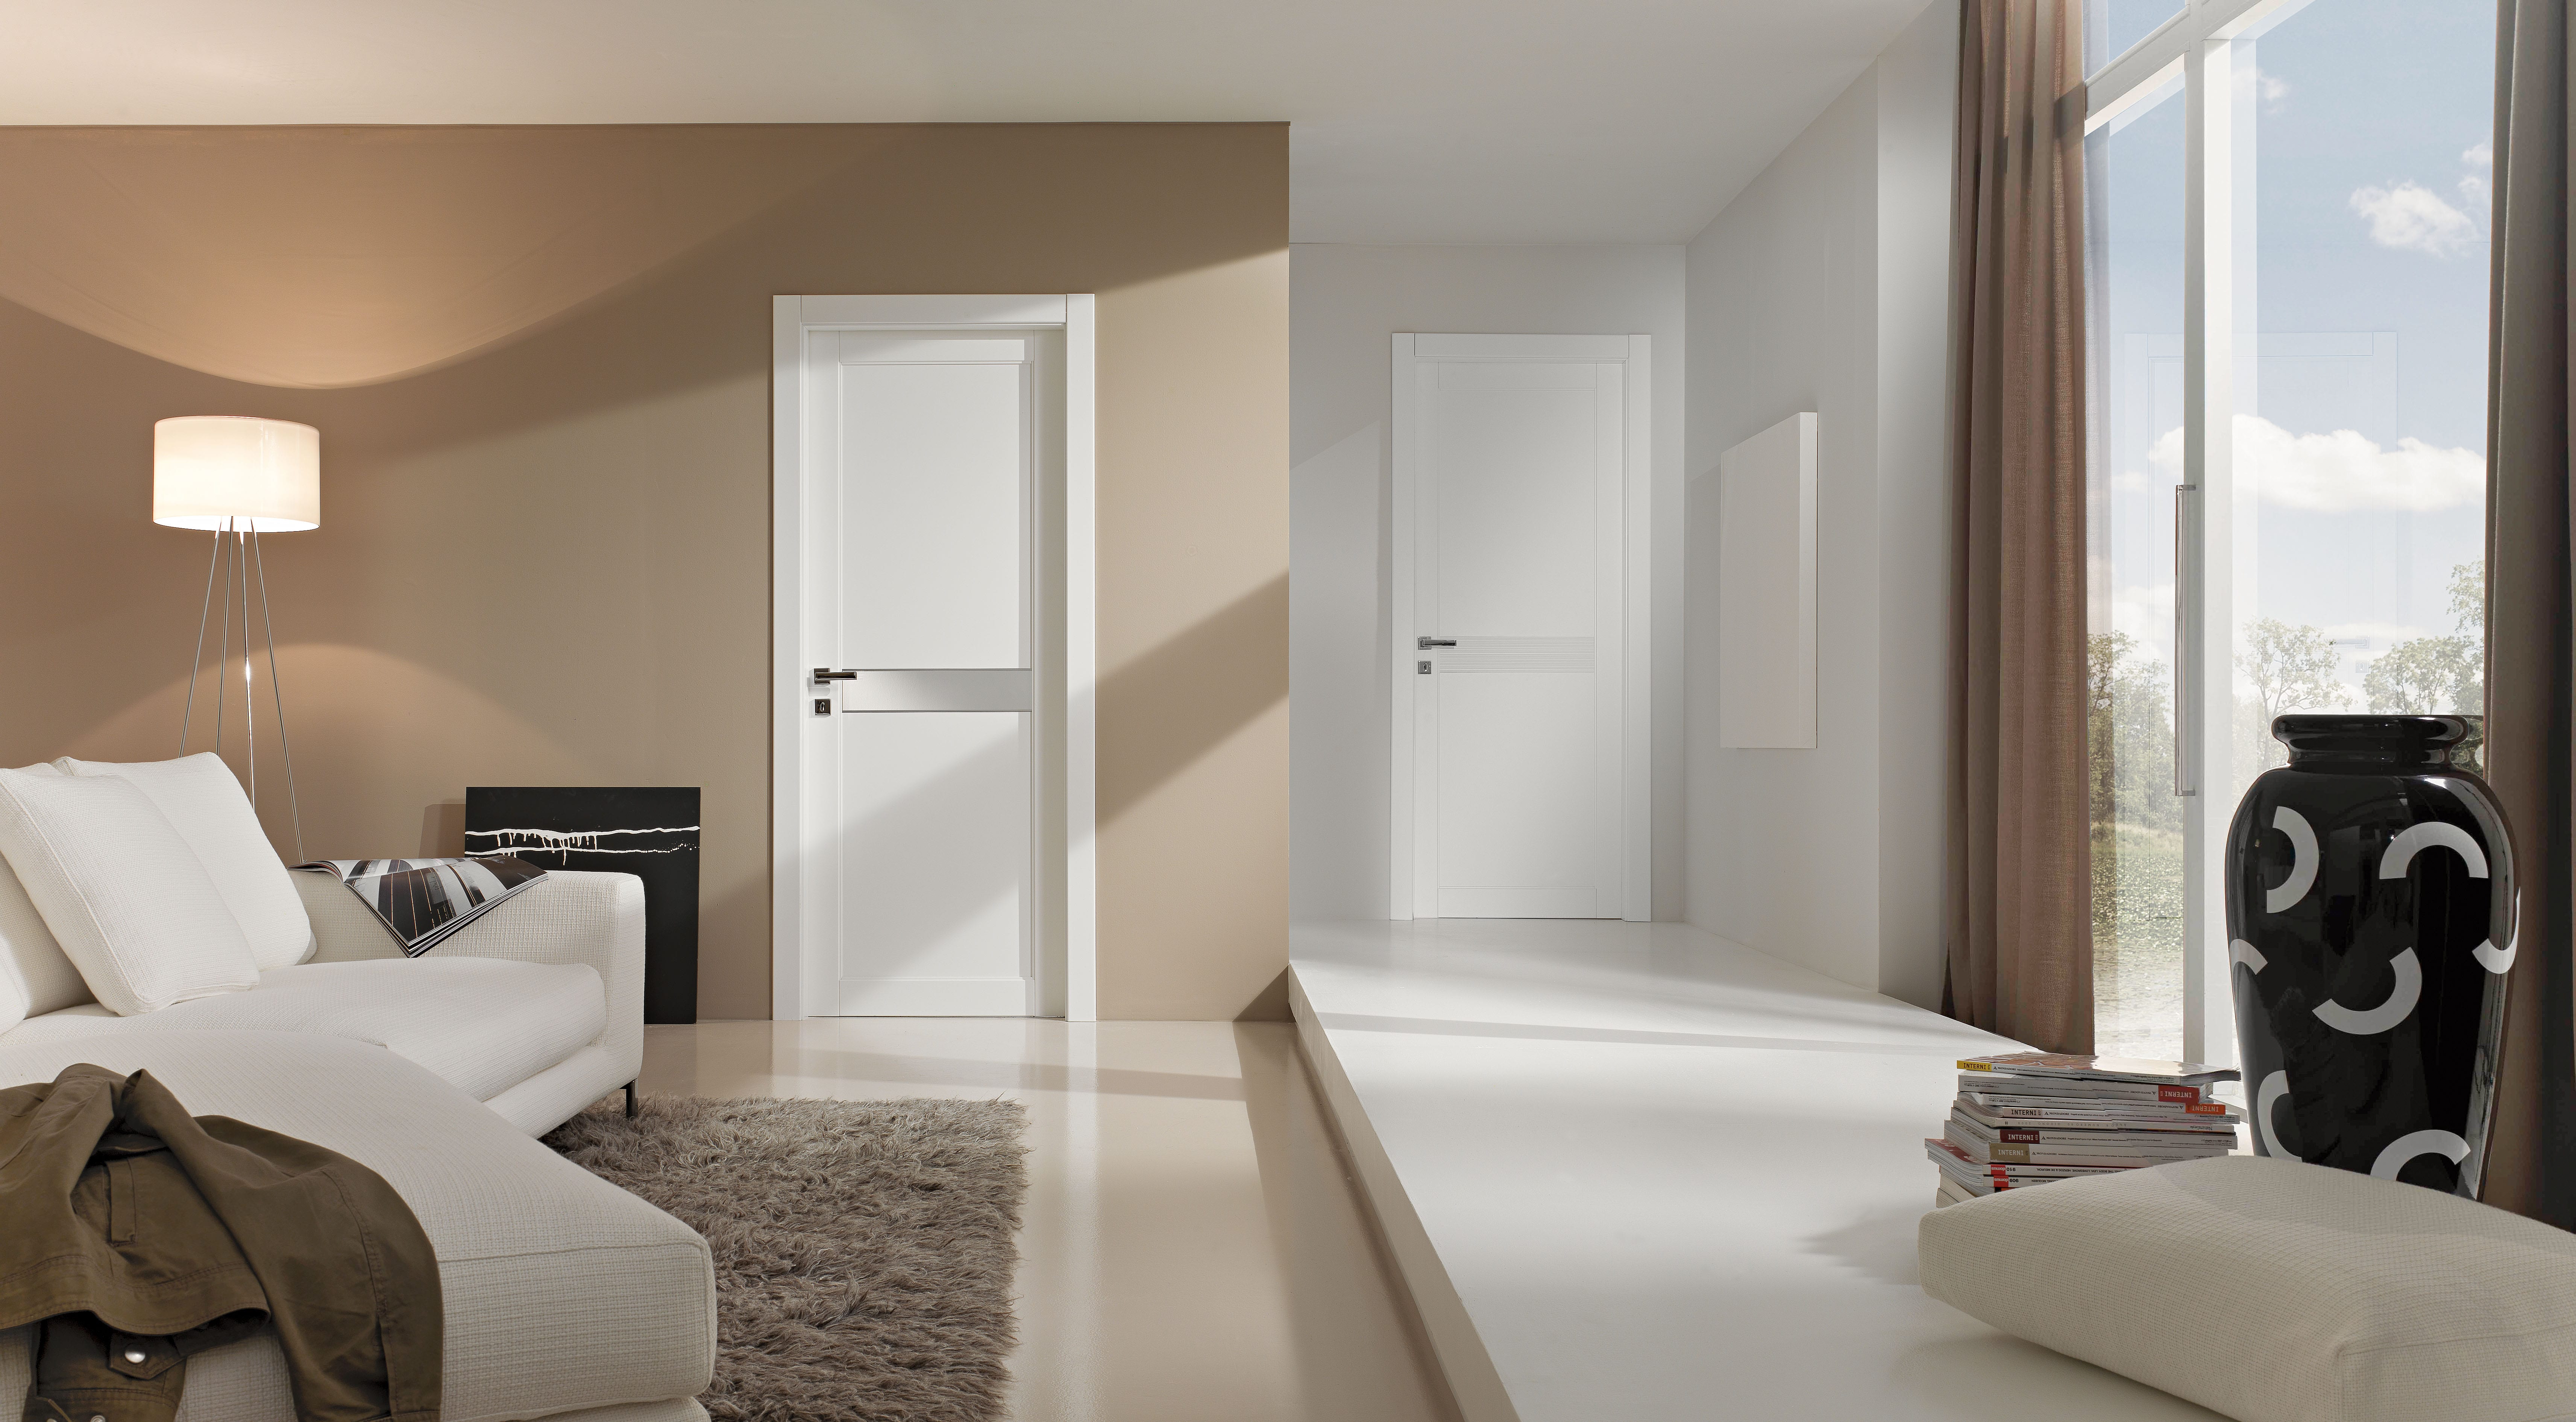 wohnzimmer braun mit sofa weiß und gardinen braun-luxus interior design